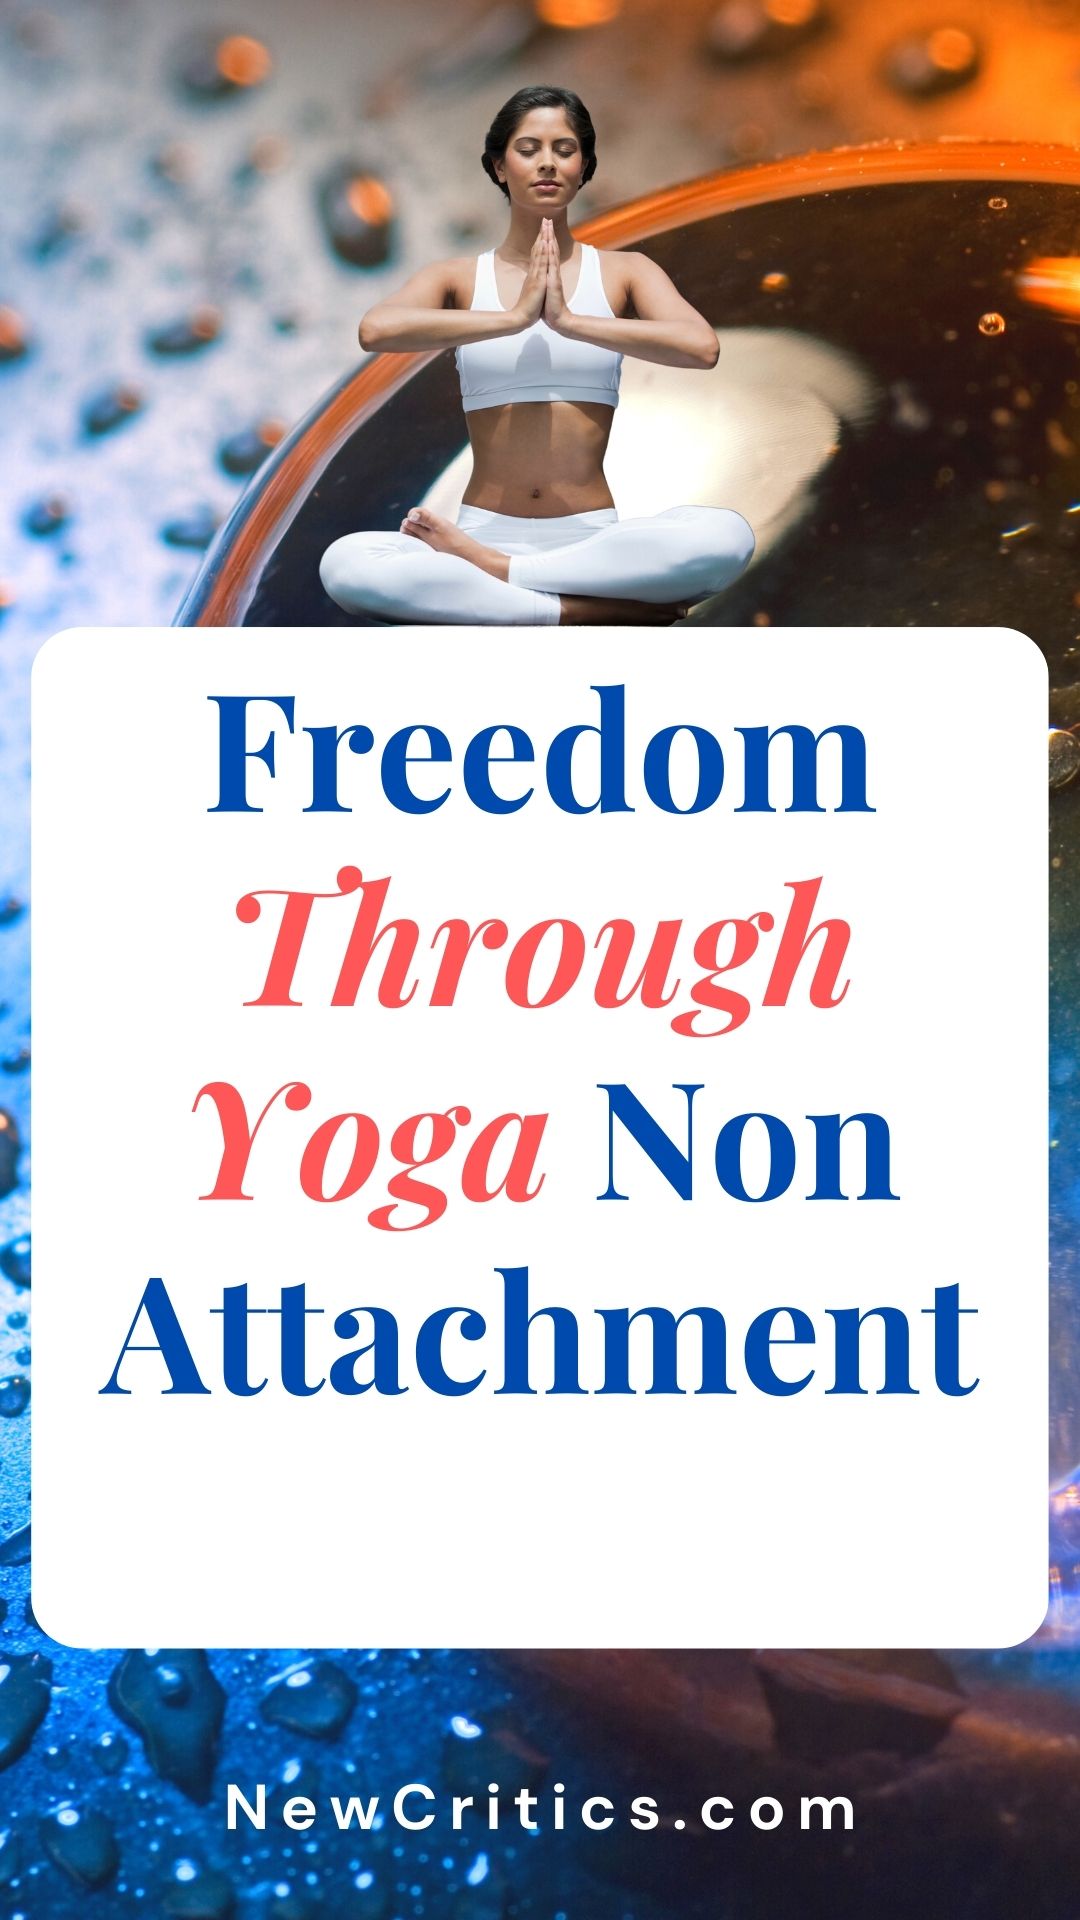 Freedom Through Yoga Non-Attachment / Canva